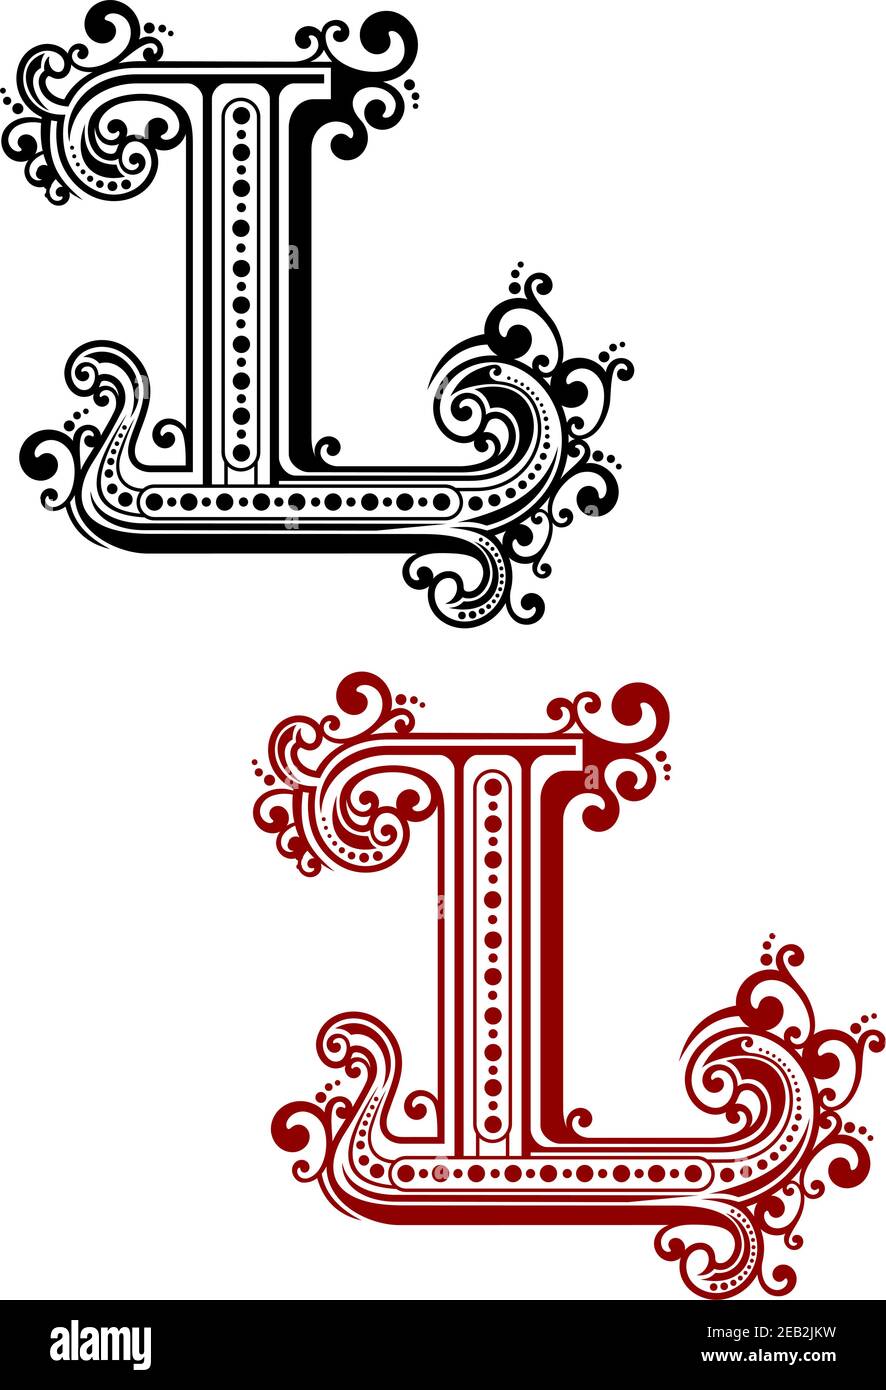 Lettre majuscule gothique L avec curligues ornementales vintage et éléments décoratifs calligraphiques, pour la conception de monogrammes ou de polices Illustration de Vecteur